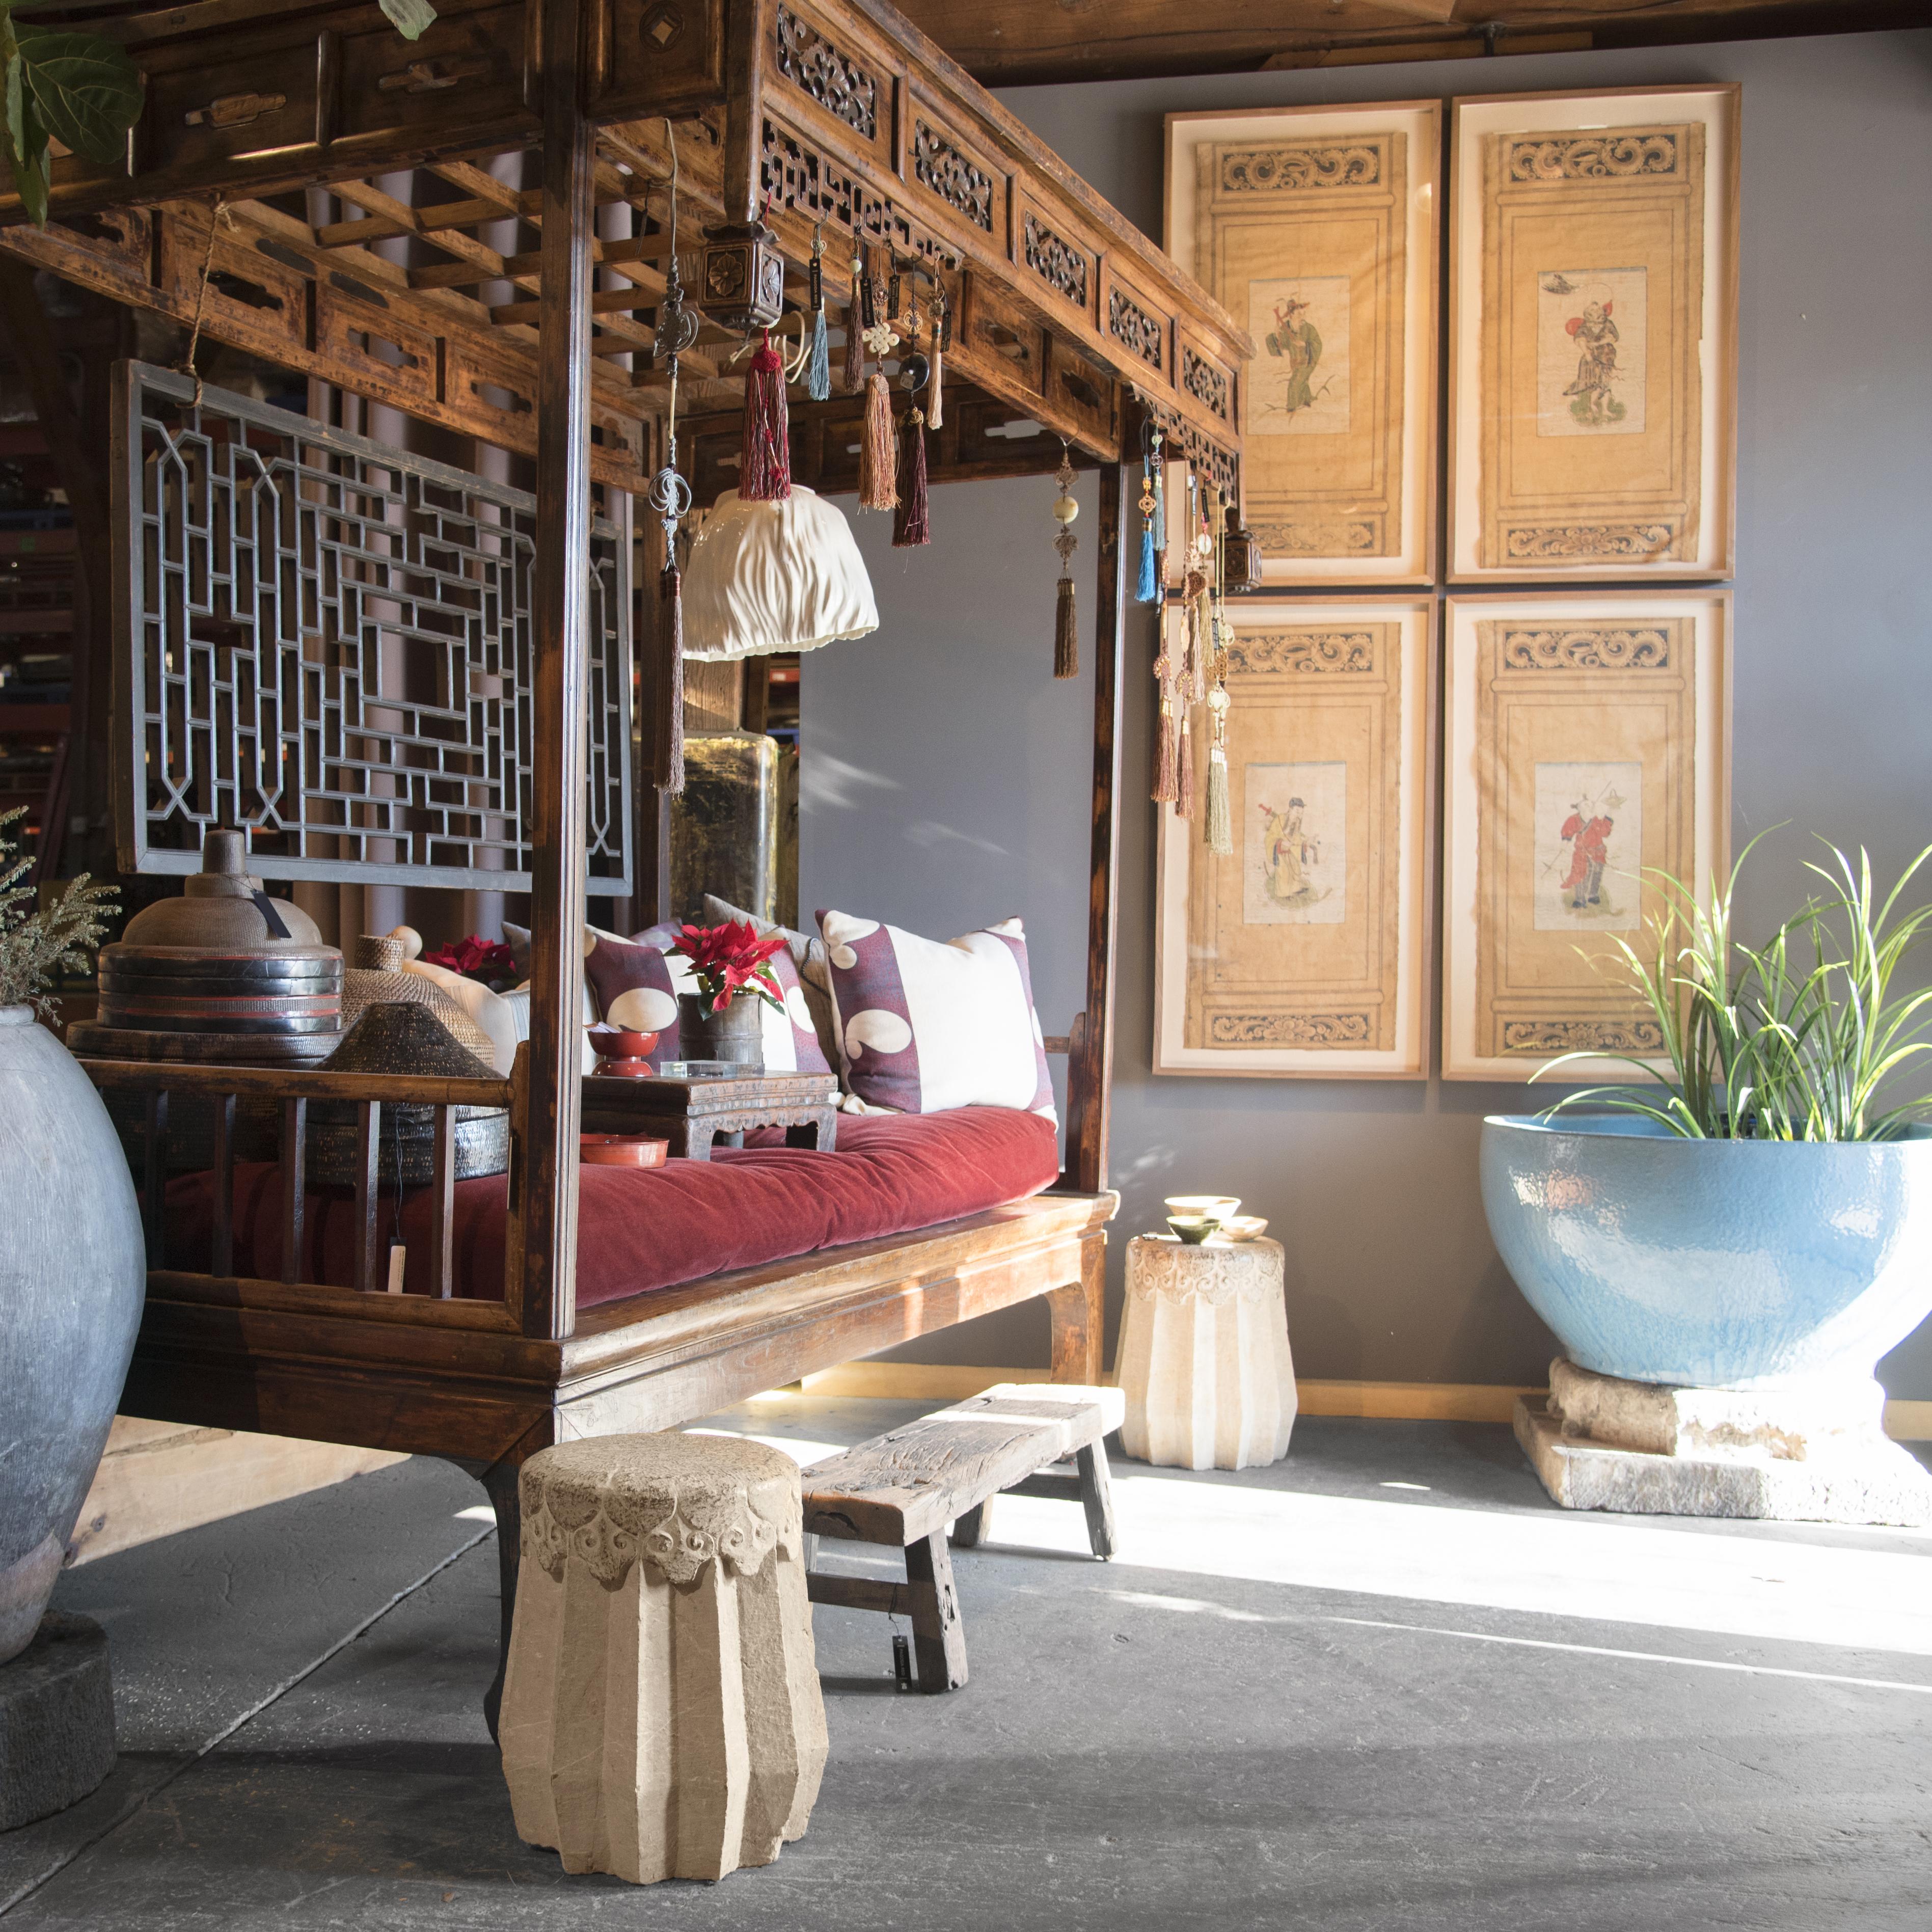 Depuis le XIIe siècle, les Chinois utilisent des paravents et des portes pliantes pour cloisonner et décorer leurs maisons. Les scènes vivantes qui s'affichent à l'arrière des paravents ajoutent de la vie et de la couleur à une pièce. Cette peinture